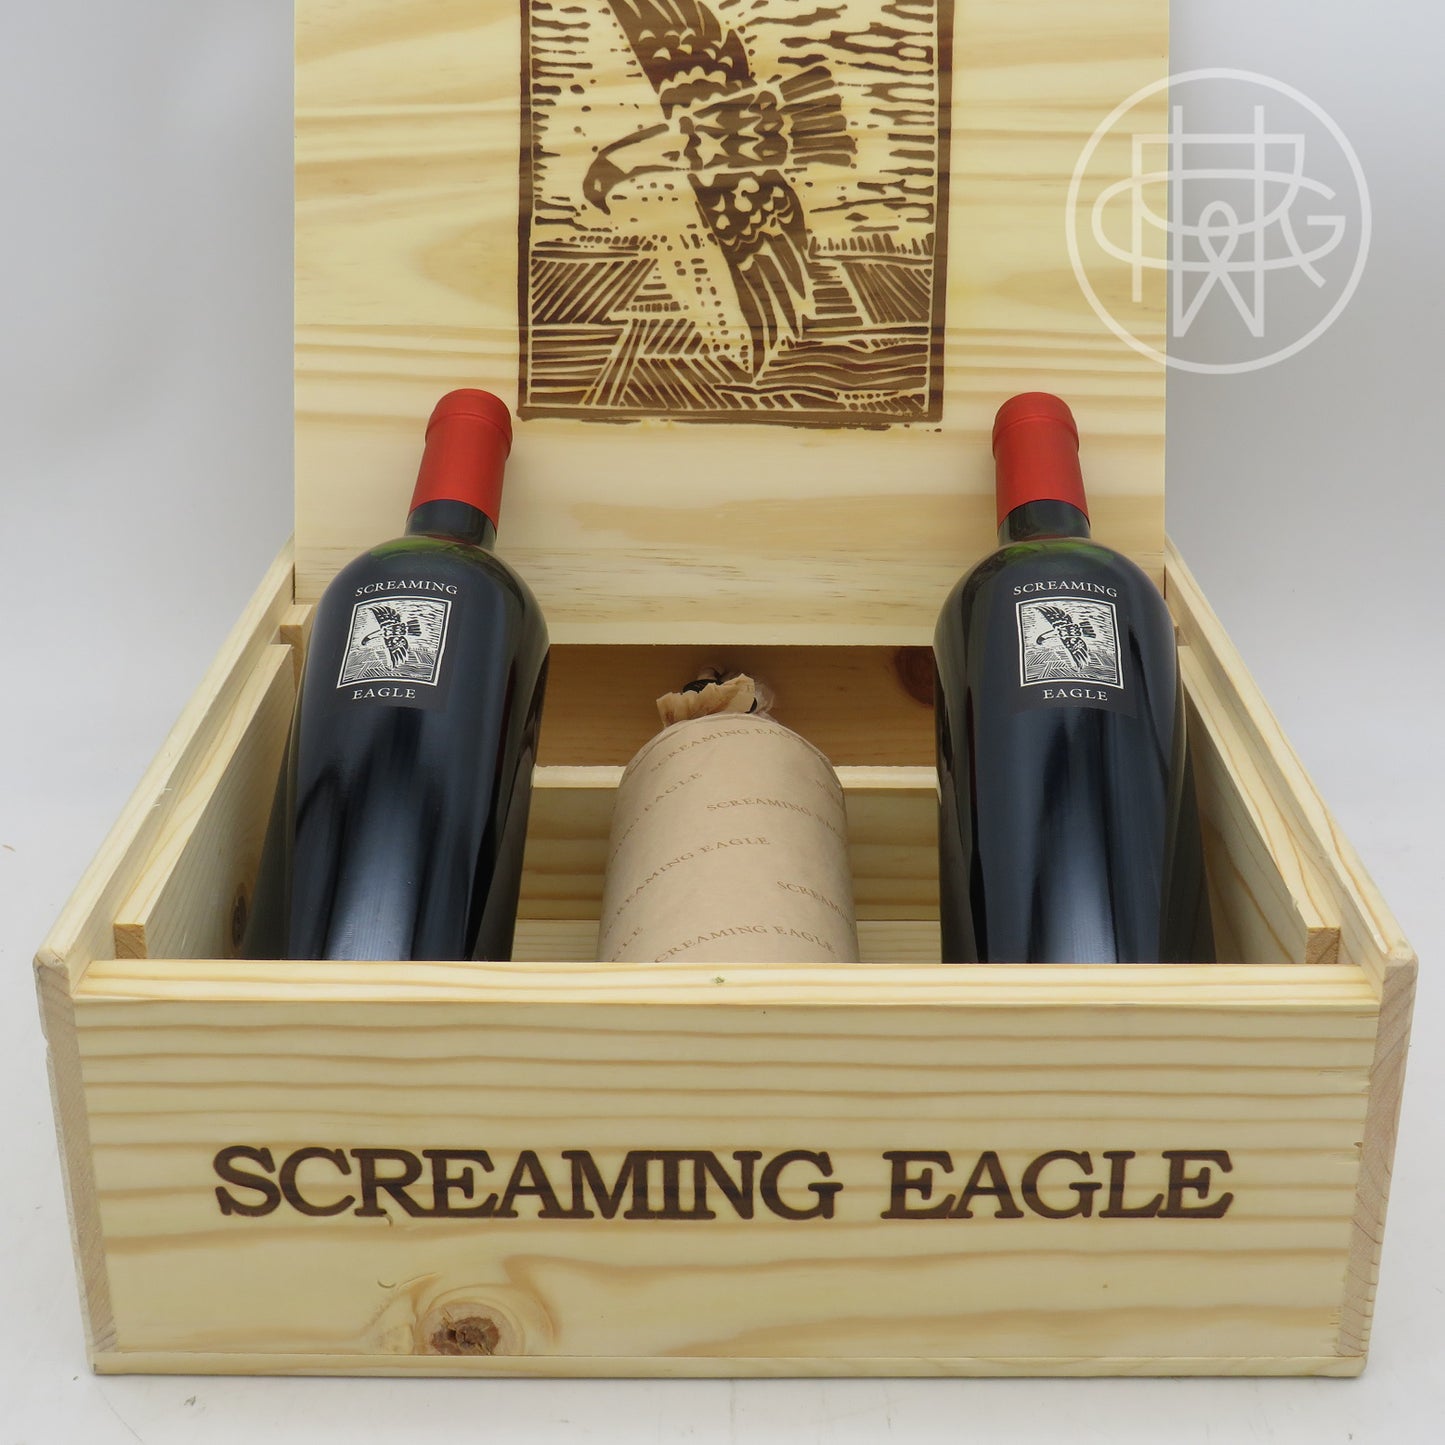 Screaming Eagle 2019 3-Pack OWC 750mL